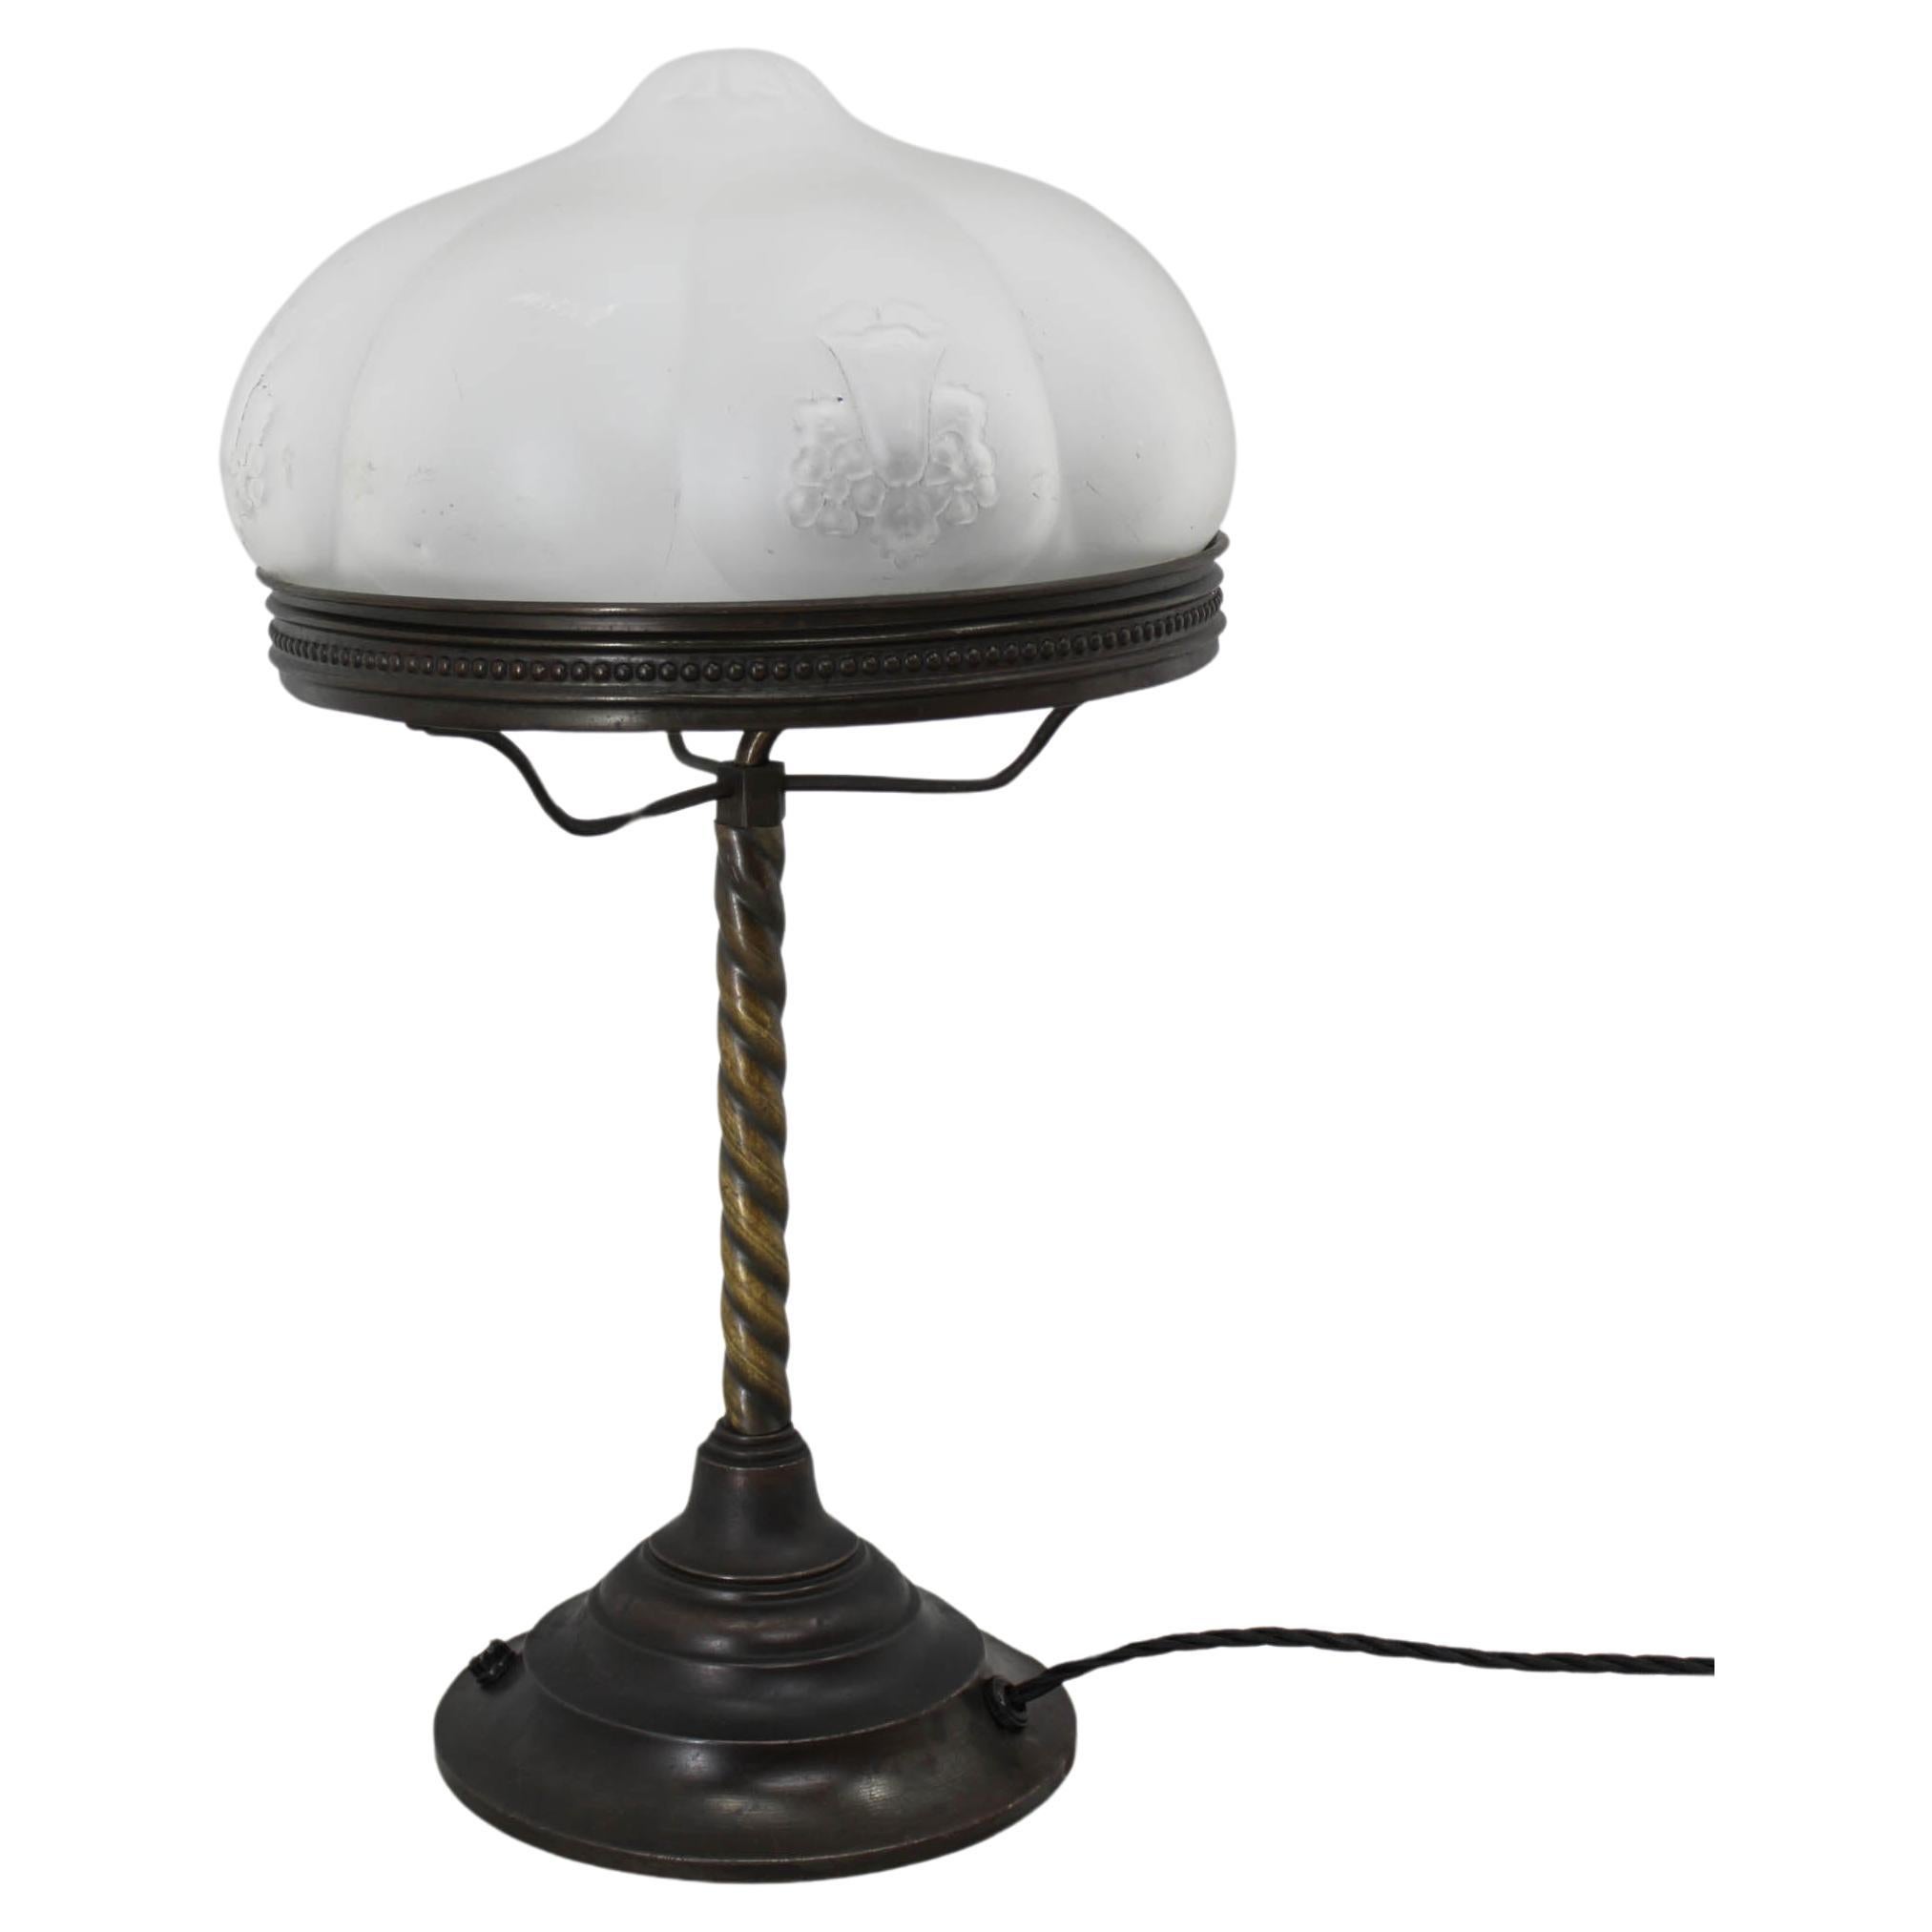 Art Nouveau Table Lamp with Floral Motive, 1920s For Sale